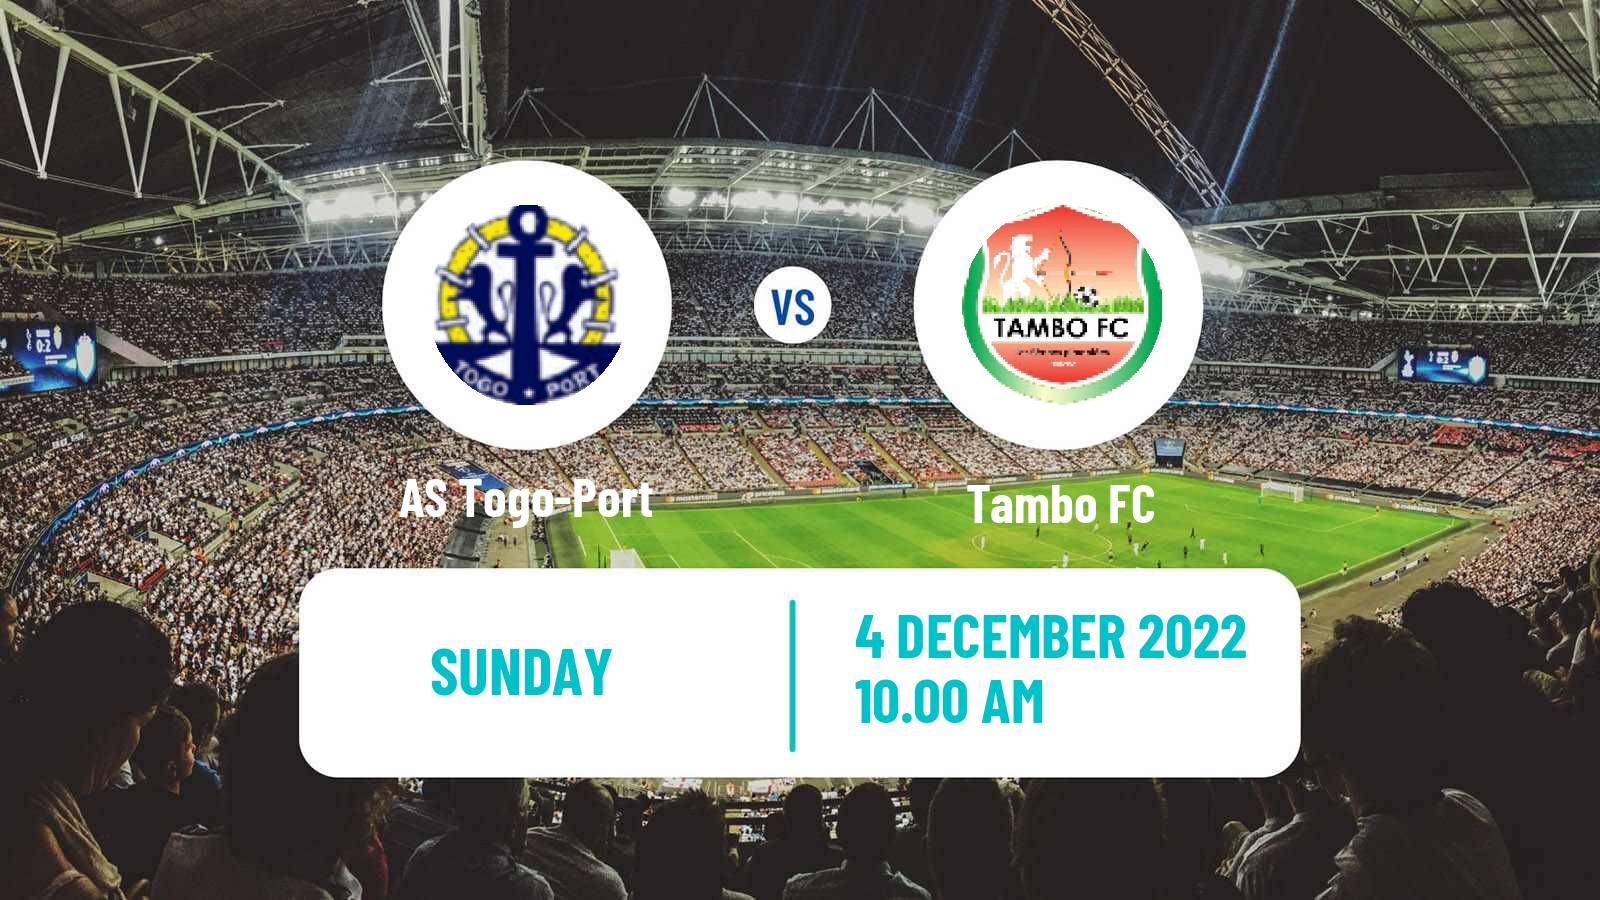 Soccer Togolese Championnat National Togo-Port - Tambo